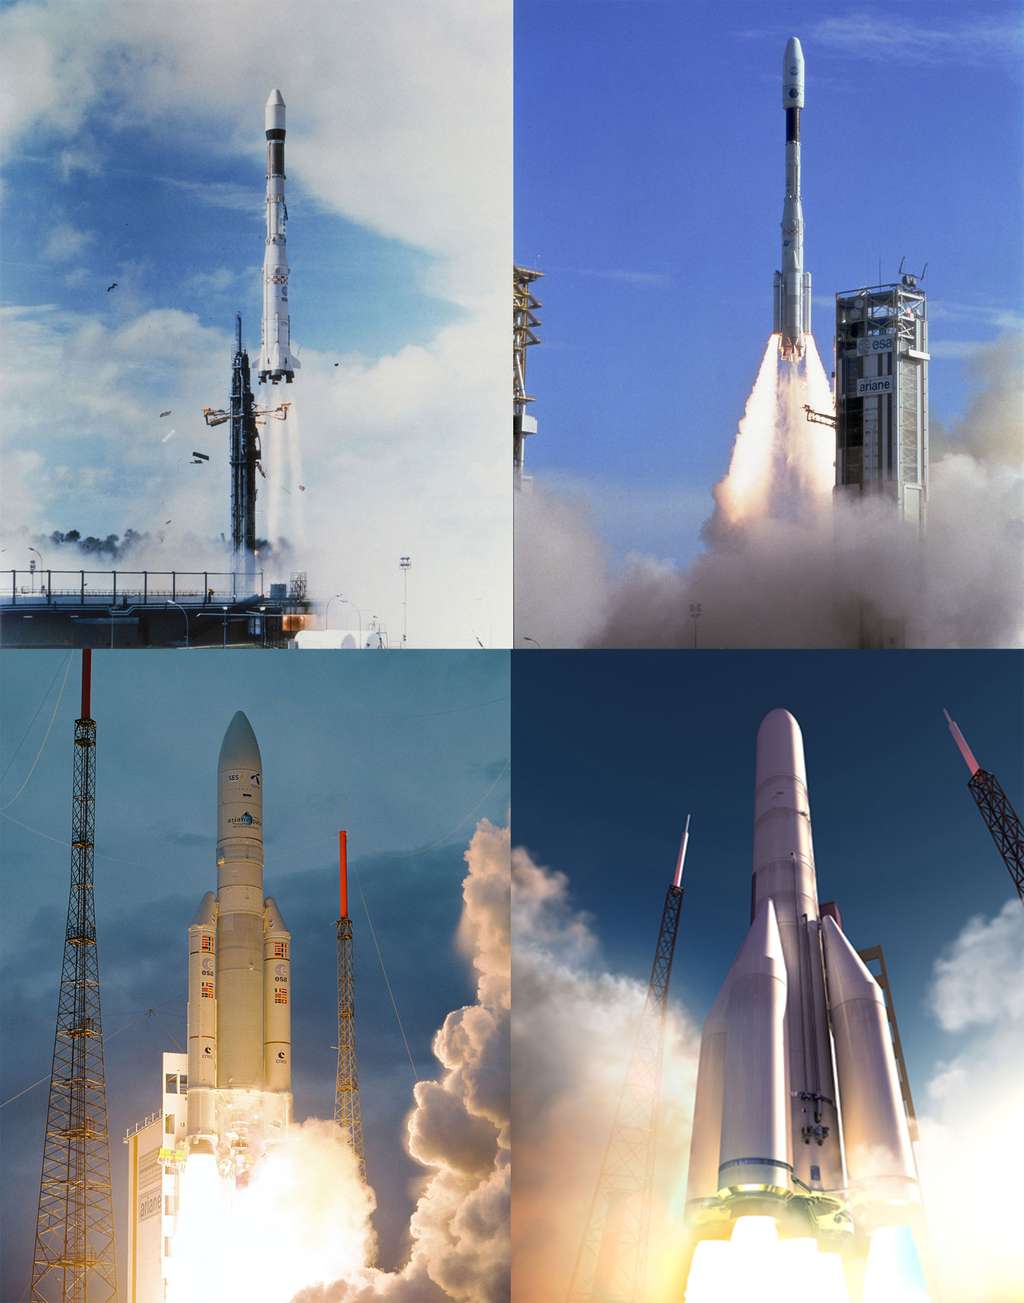 Du premier vol d'une Ariane en 1979 et d'Ariane 4 à Ariane 5, ces familles de lanceurs ont assuré à l'Europe trois décennies d'accès indépendant à l’espace. En 2020, Ariane 6 prendra progressivement le relais d'Ariane 5 pour un accès à l'espace moins cher. © Esa/Cnes/Arianespace - Service Optique